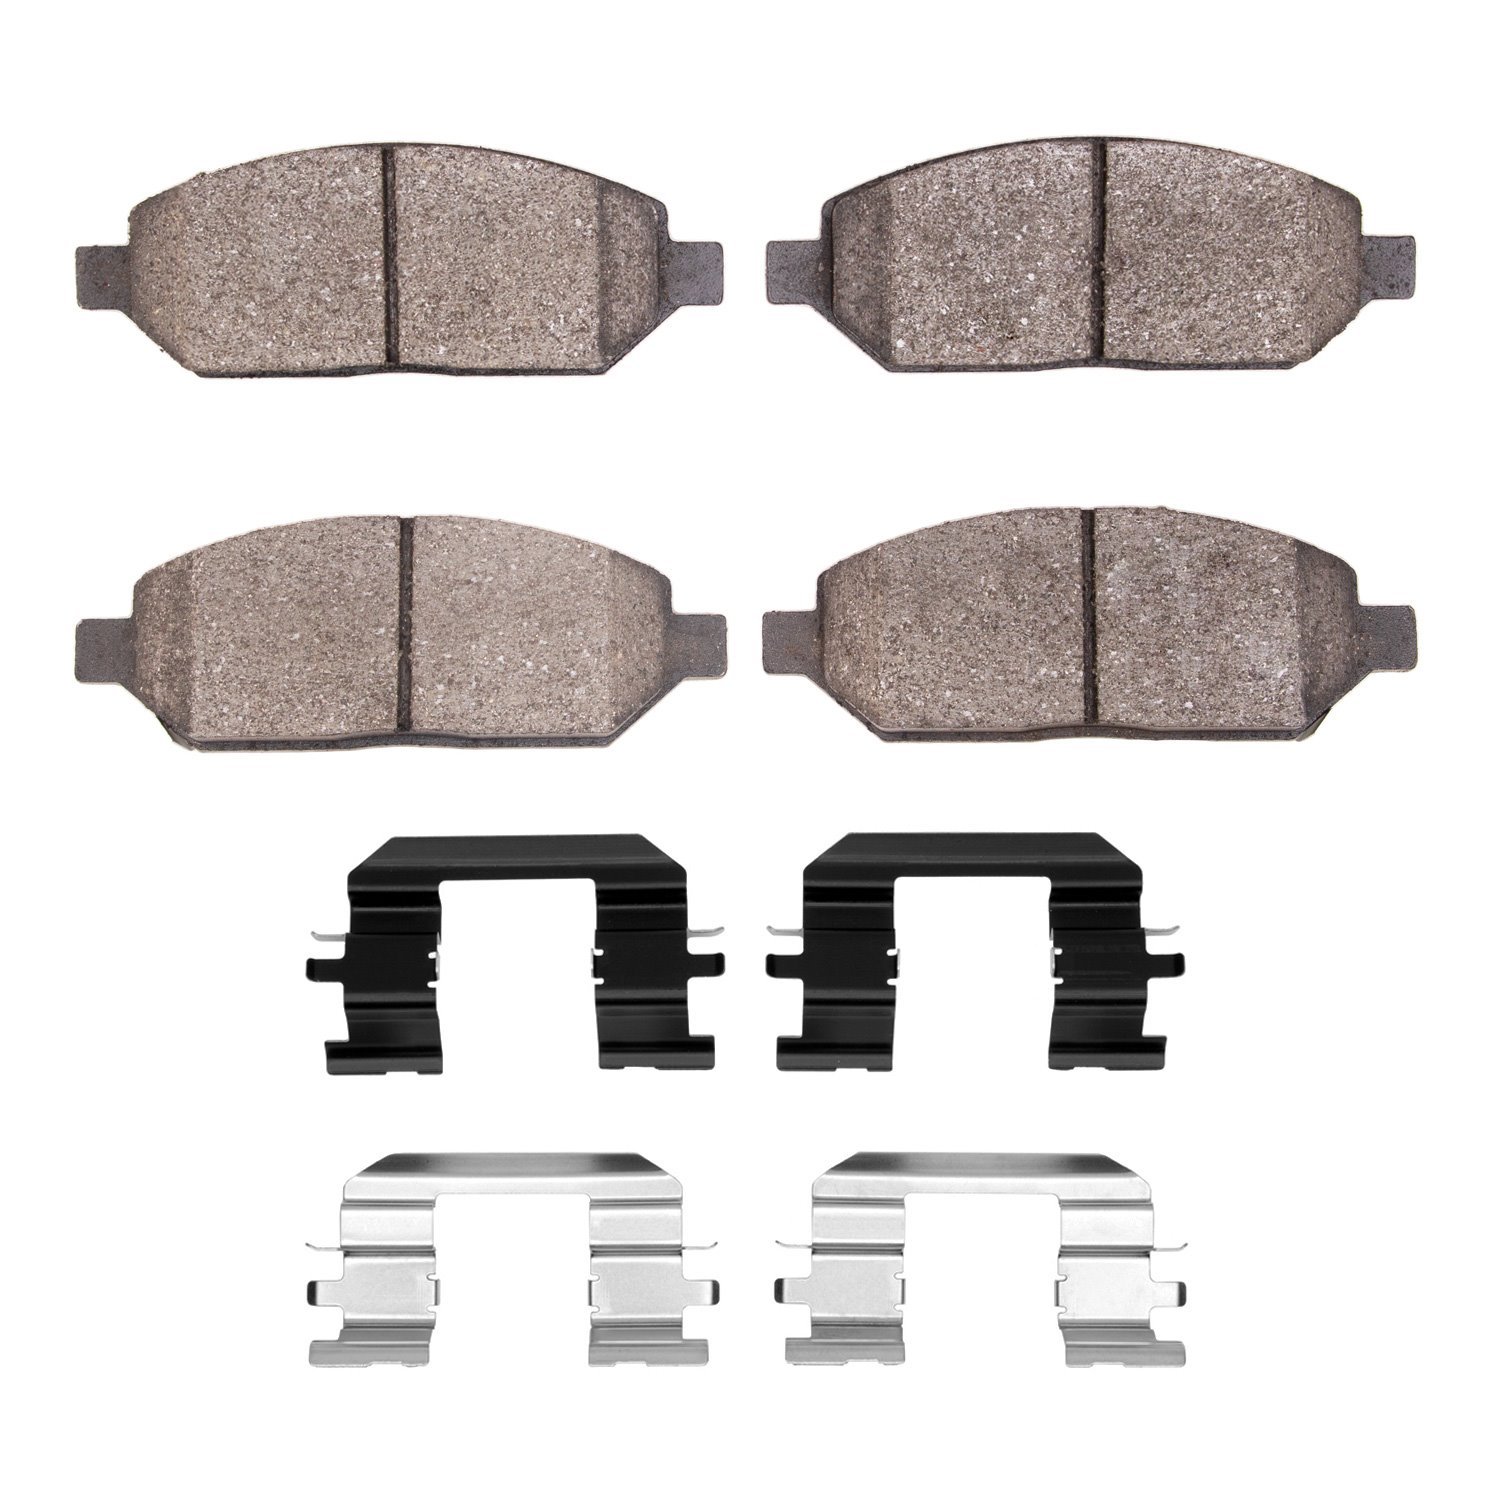 1311-2024-01 3000-Series Semi-Metallic Brake Pads & Hardware Kit, 2017-2018 GM, Position: Front